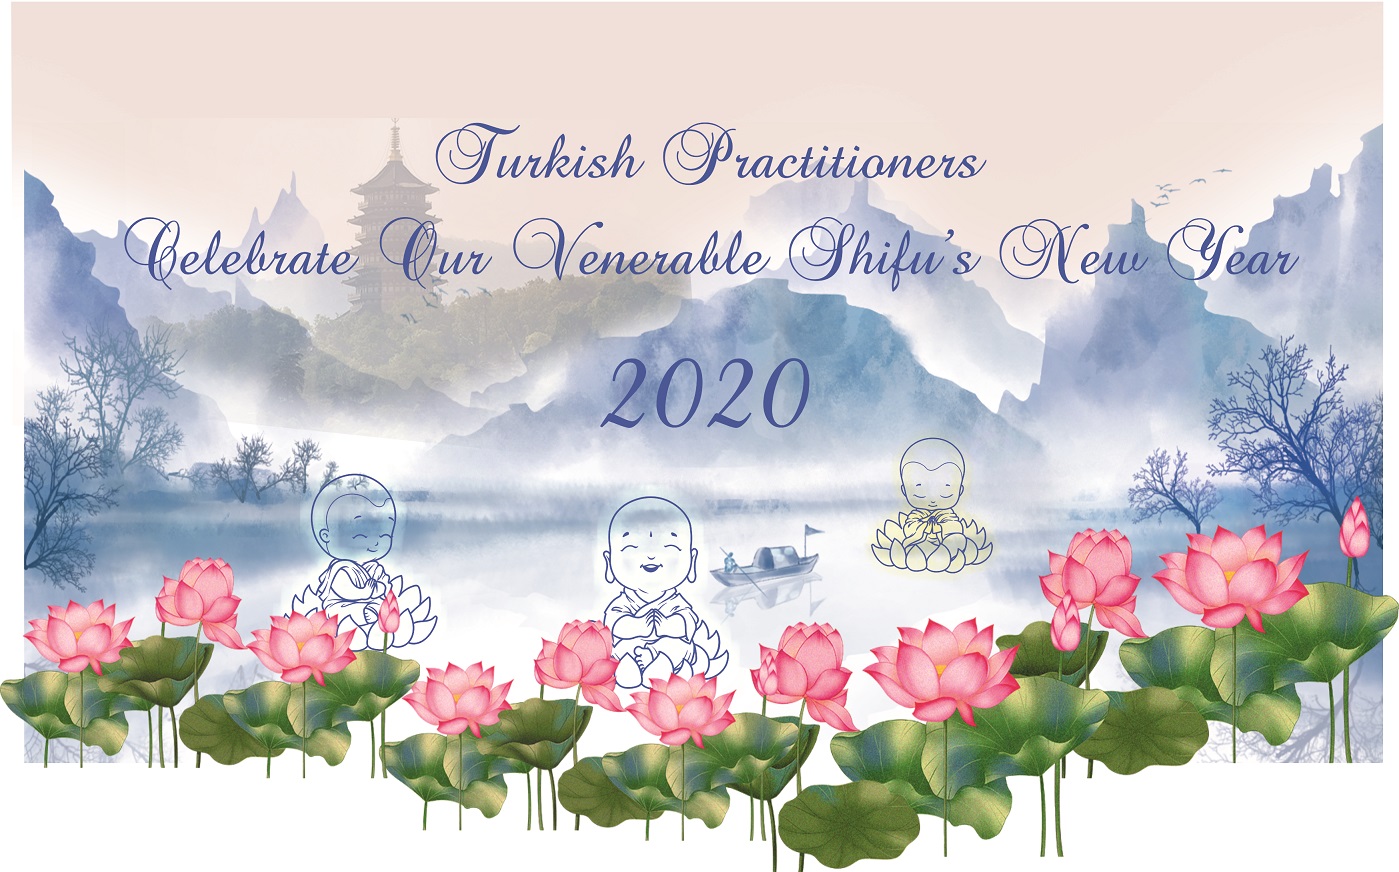 Image for article Türkiye'deki Uygulayıcılar Saygıdeğer Shifu'nun 2020 Yeni Yılını Kutluyor!